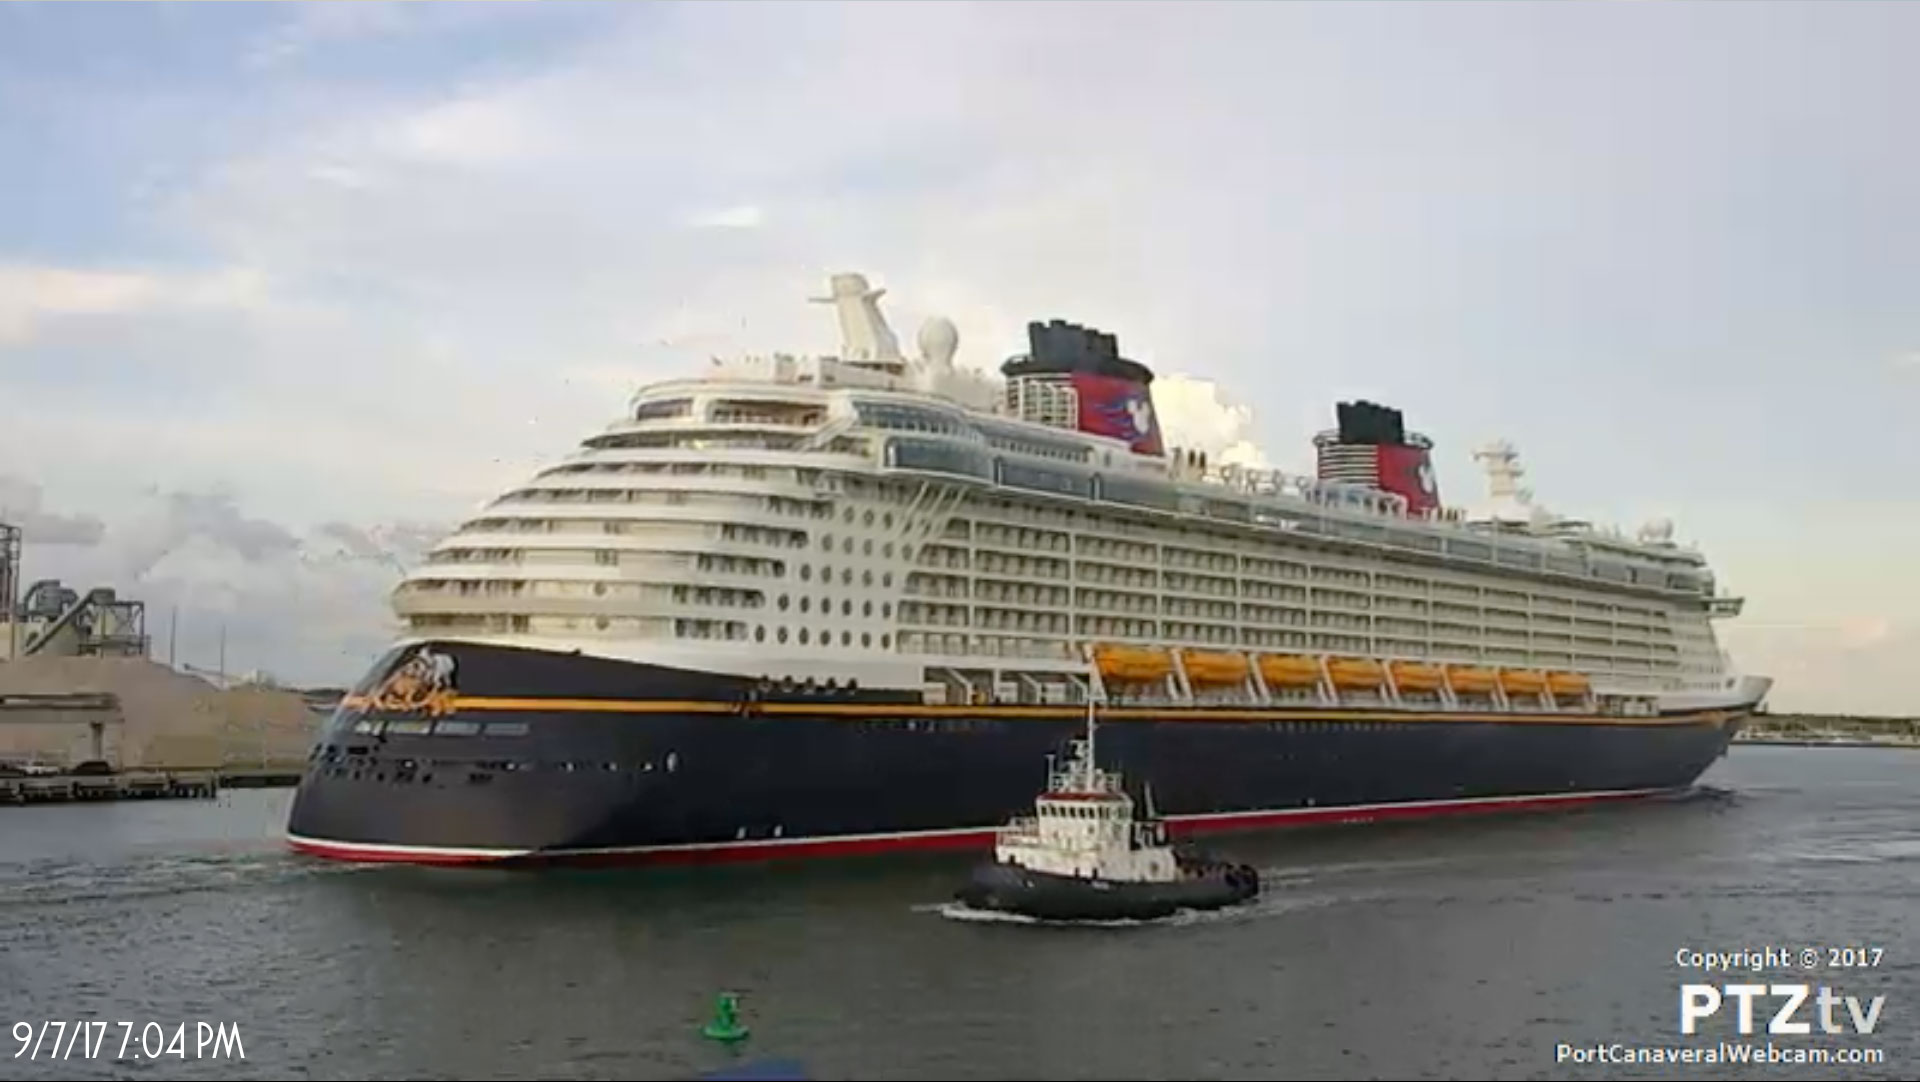 Hurricane Irma Disney Dream & Disney Fantasy Disembark Guests at Port